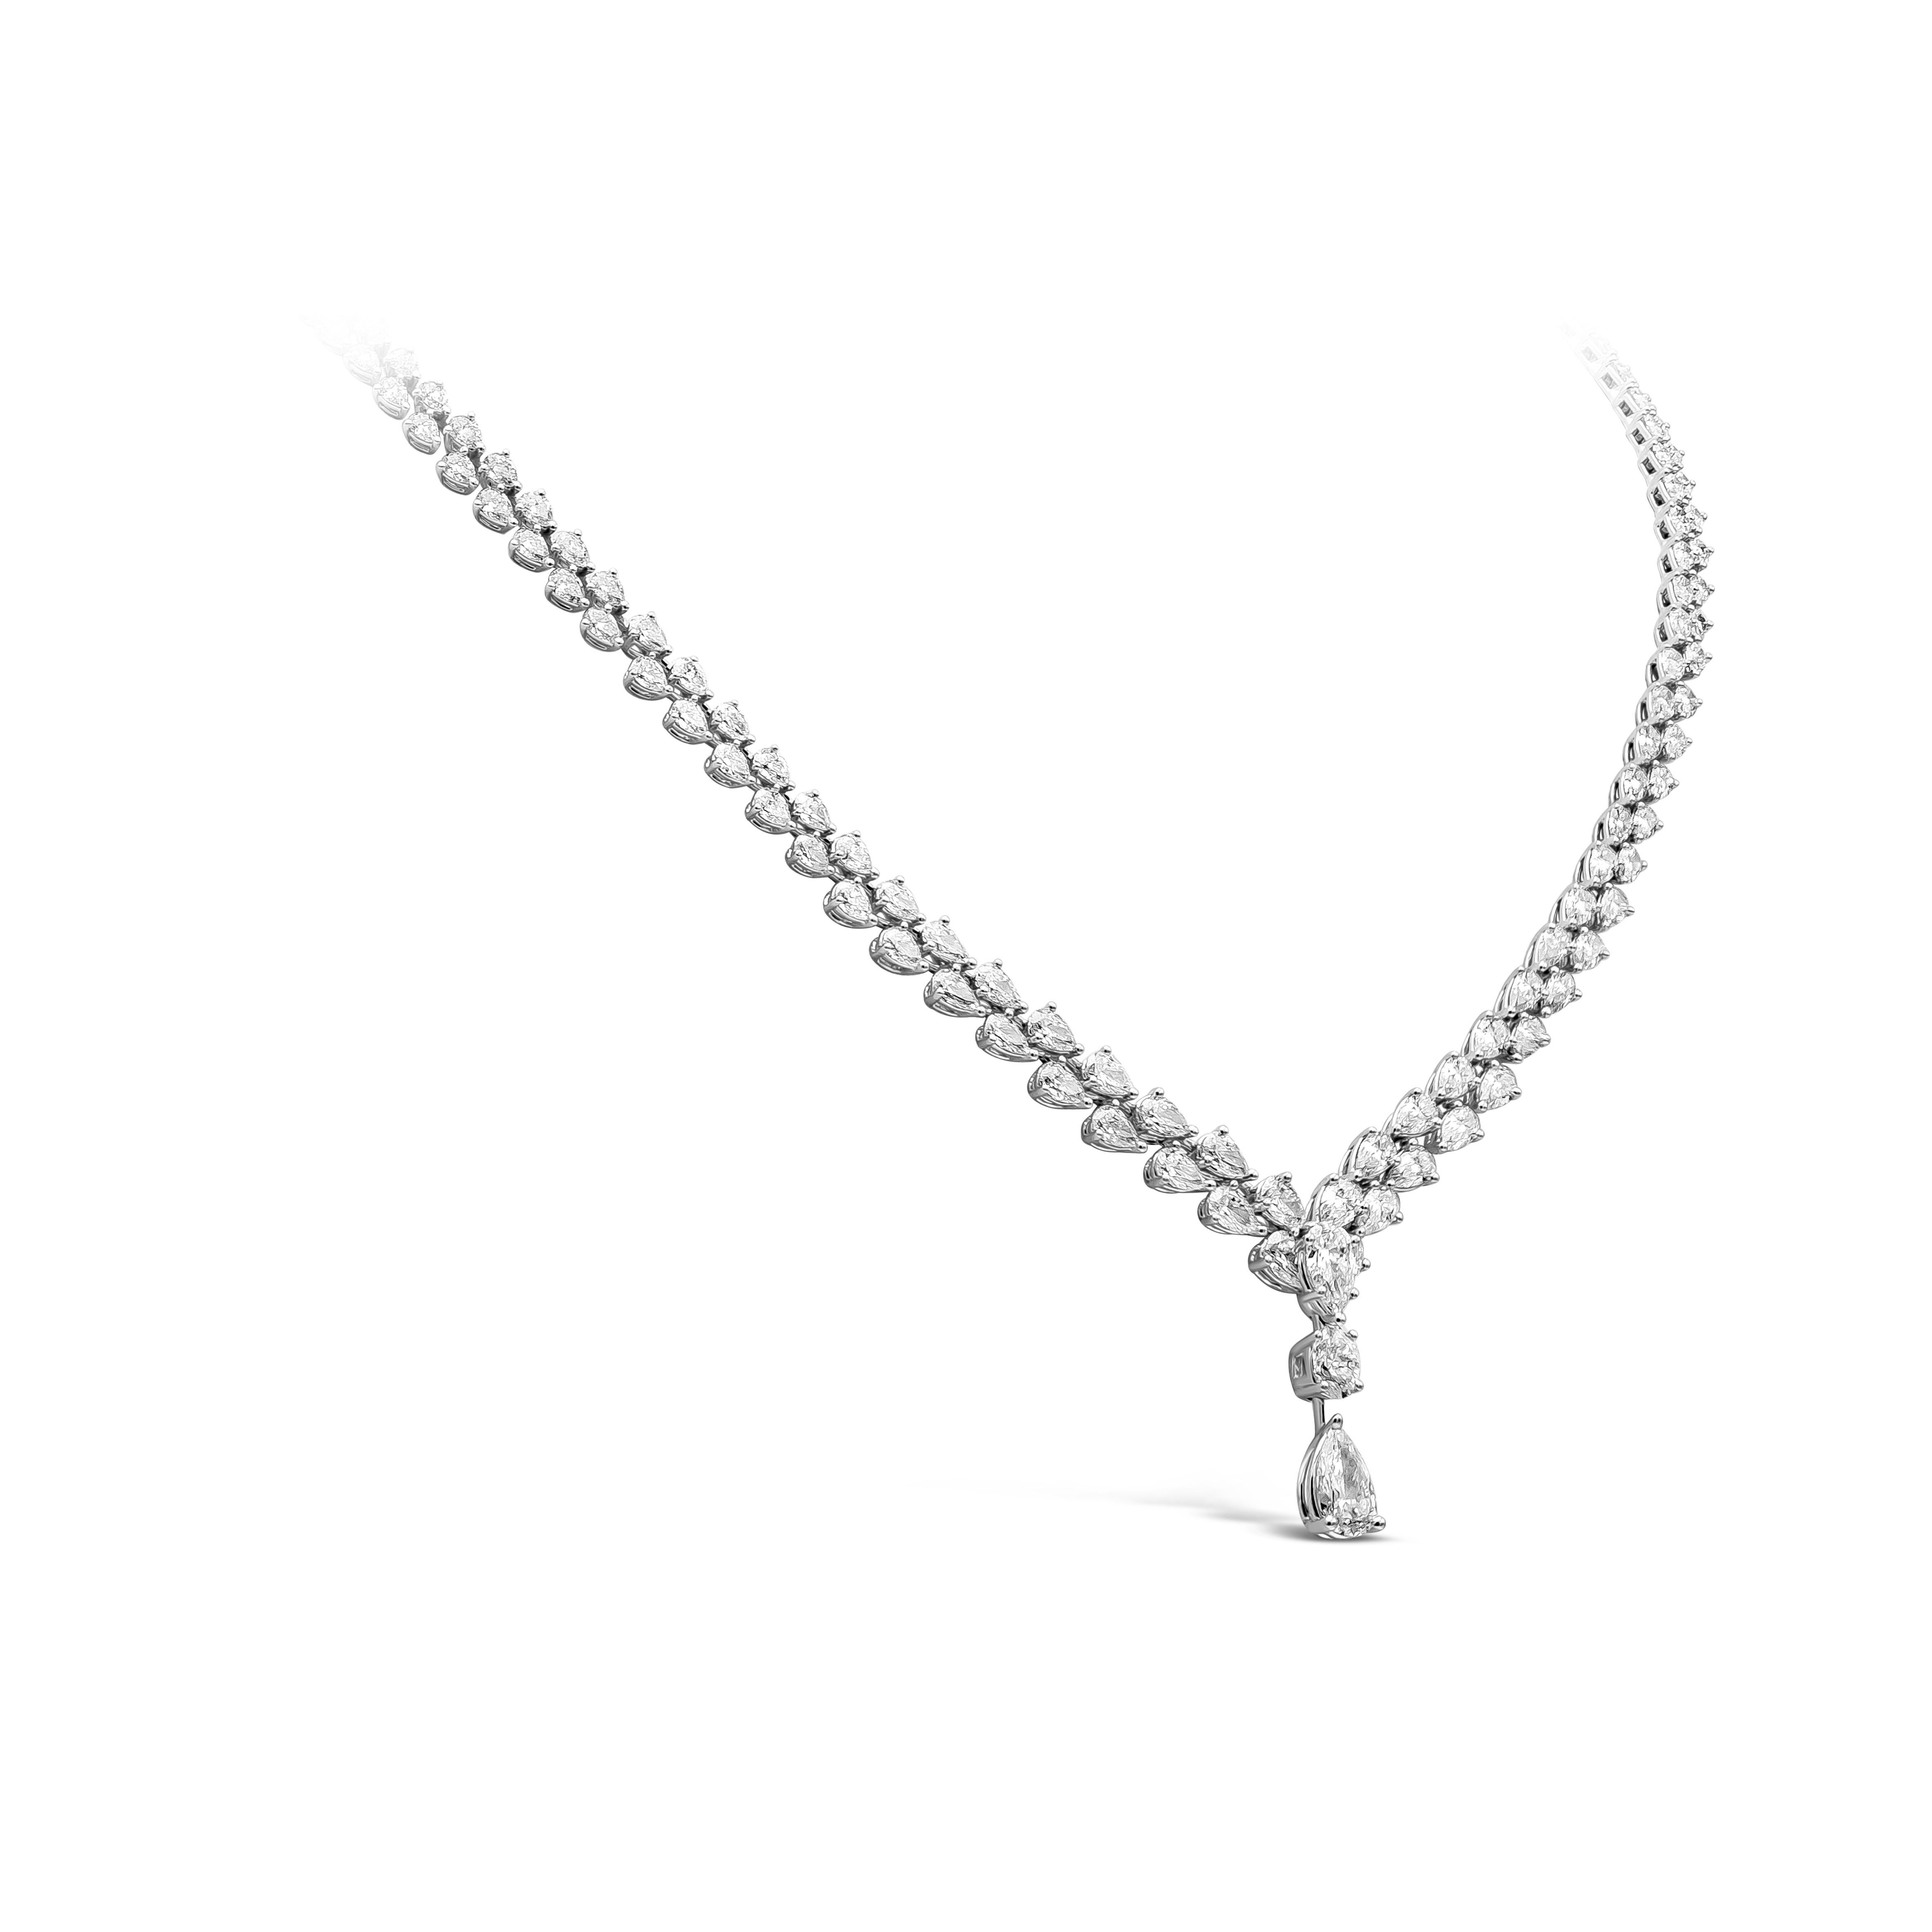 Dieses raffinierte Diamant-Tropfen-Collier besteht aus zwei Reihen birnenförmiger Diamanten mit einem Gesamtgewicht von 18,23 Karat. Die Länge dieser eleganten Halskette beträgt 217 mm und wiegt 30,55 Gramm.

Stil in verschiedenen Preisklassen